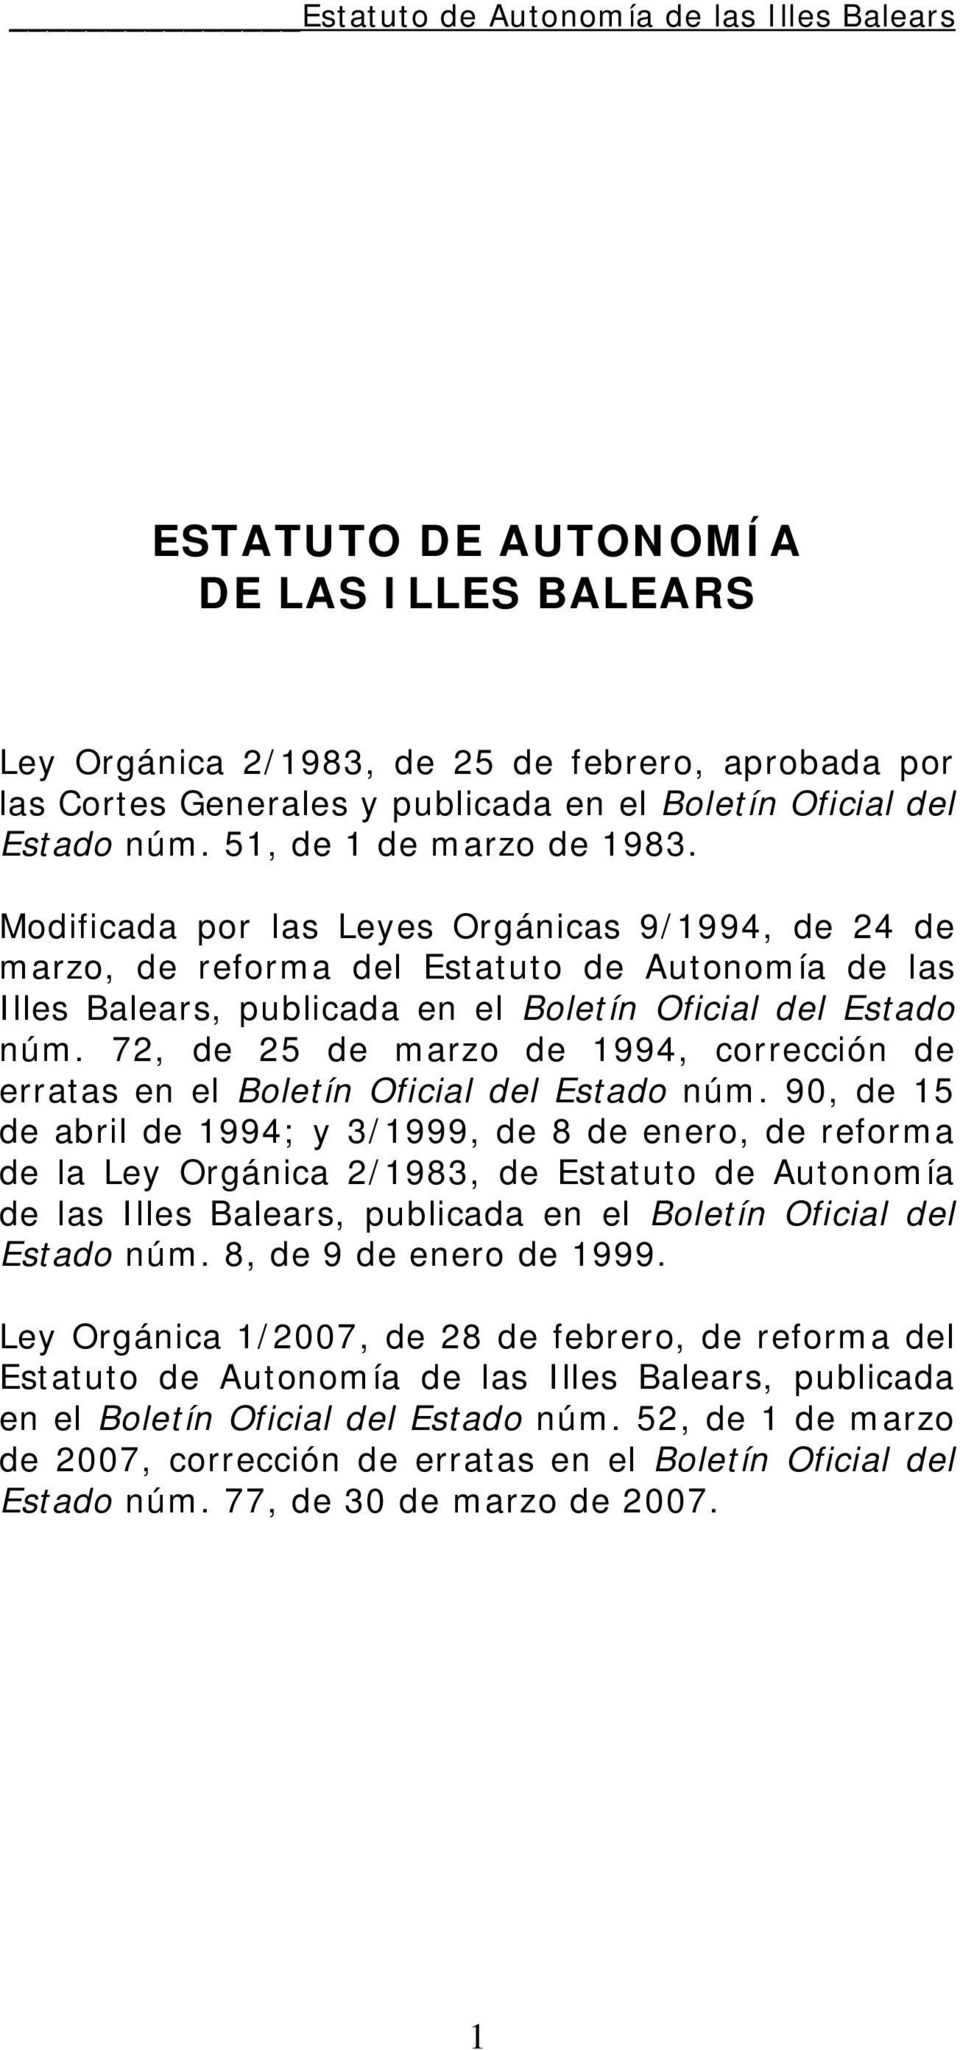 72, de 25 de marzo de 1994, corrección de erratas en el Boletín Oficial del Estado núm.